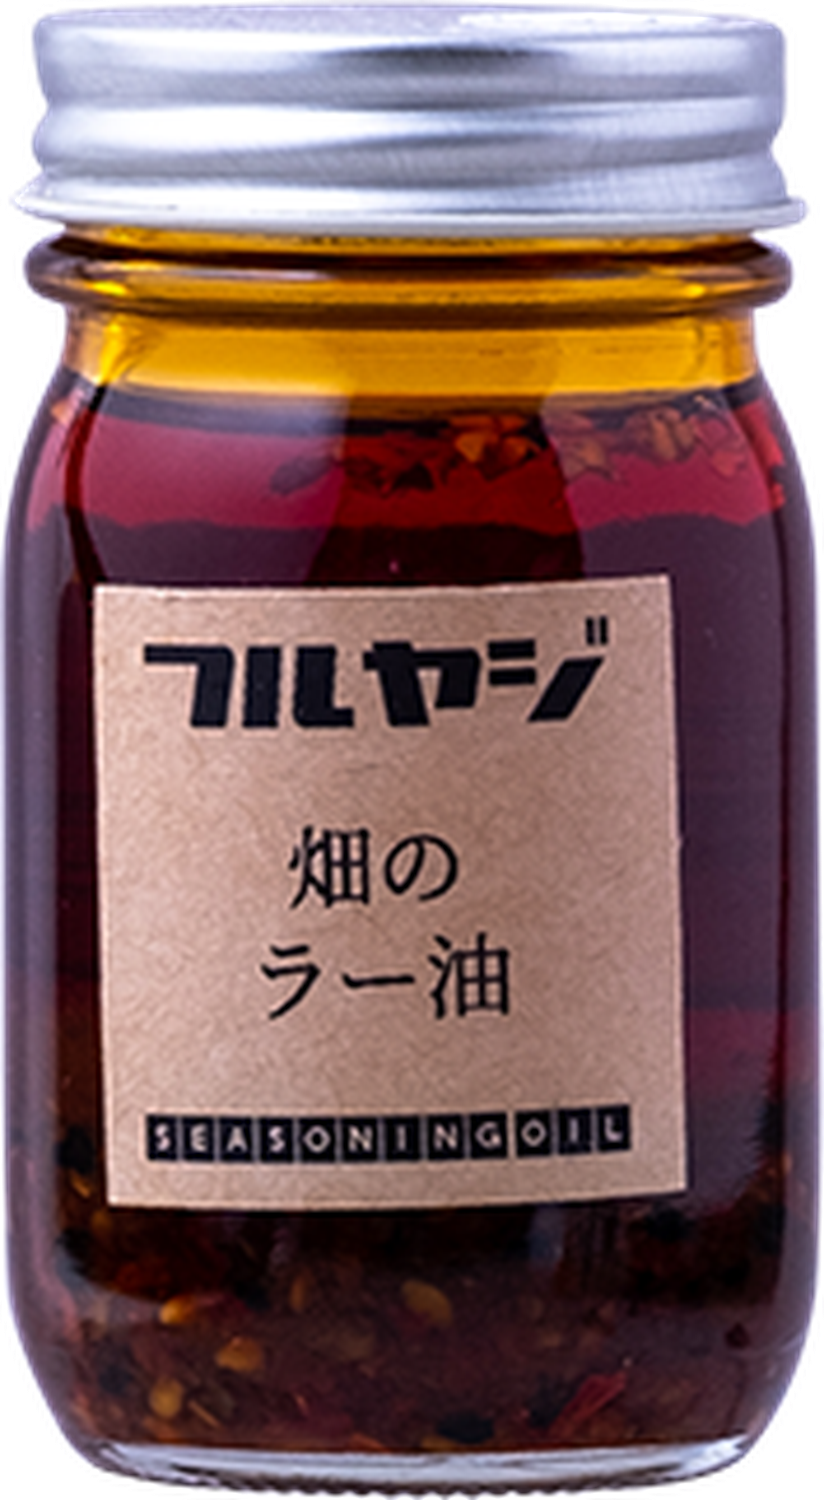 Furuyaji Organics - Hatake-no-raayu (chilli oil)